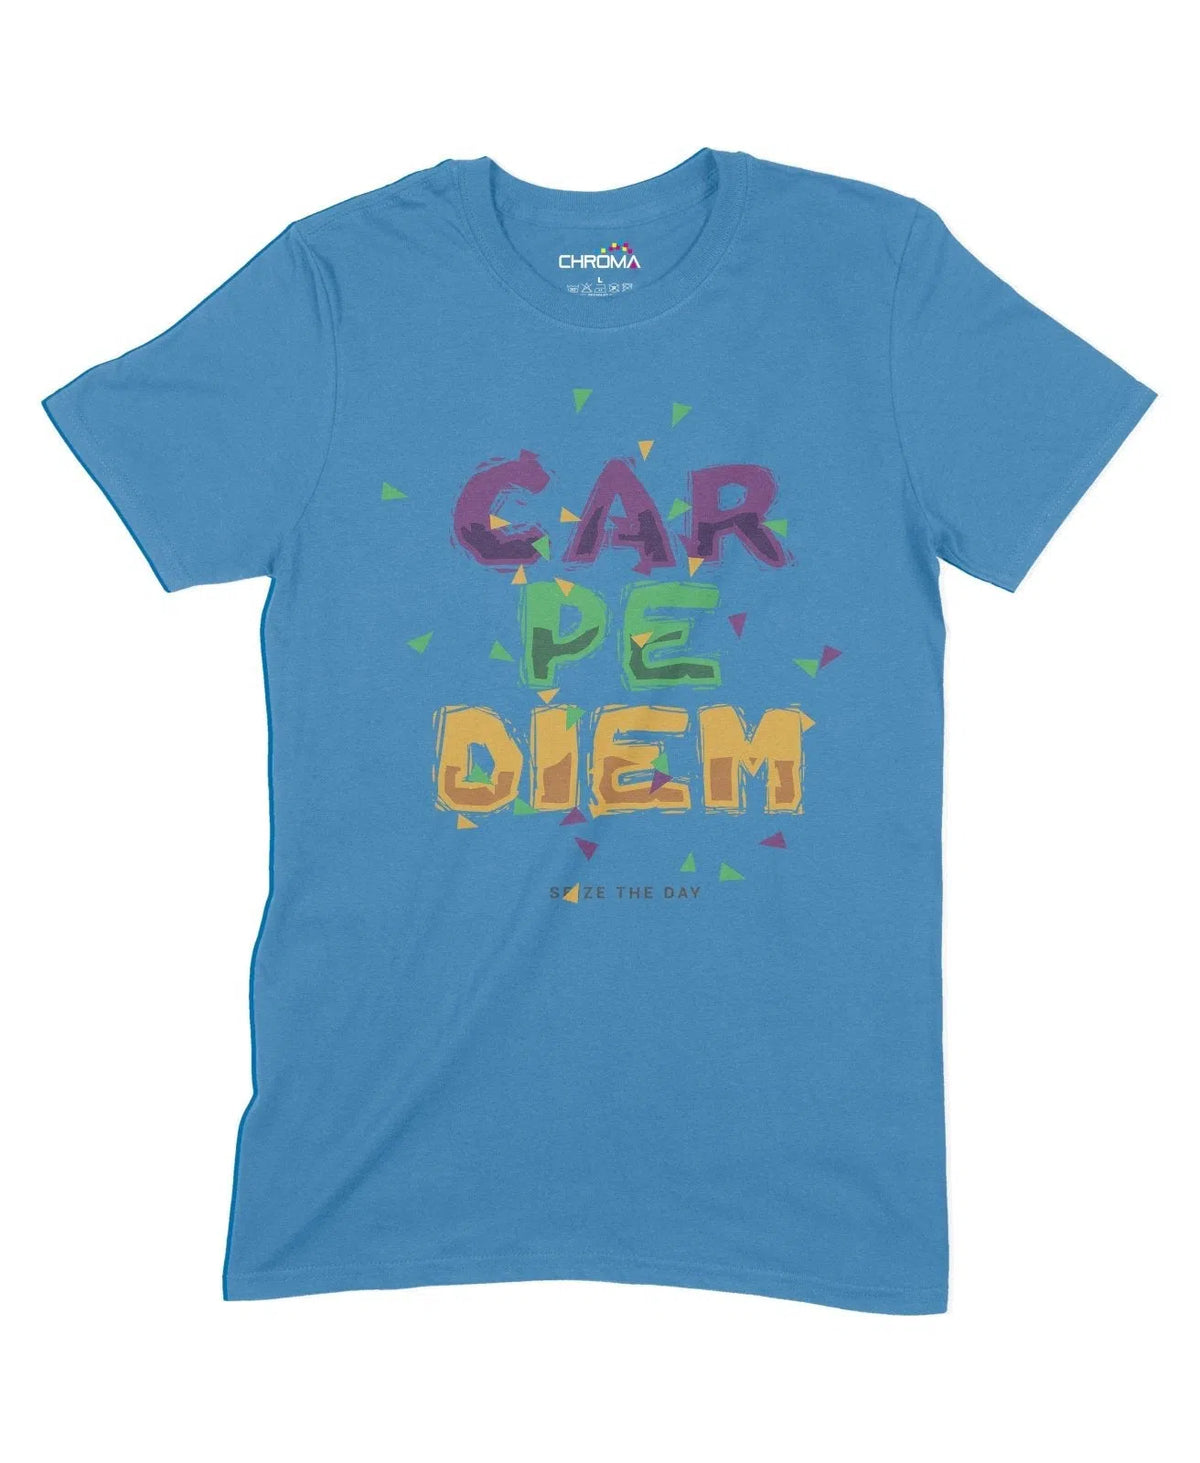 Carpe Diem Unisex Adult T-Shirt Chroma Clothing